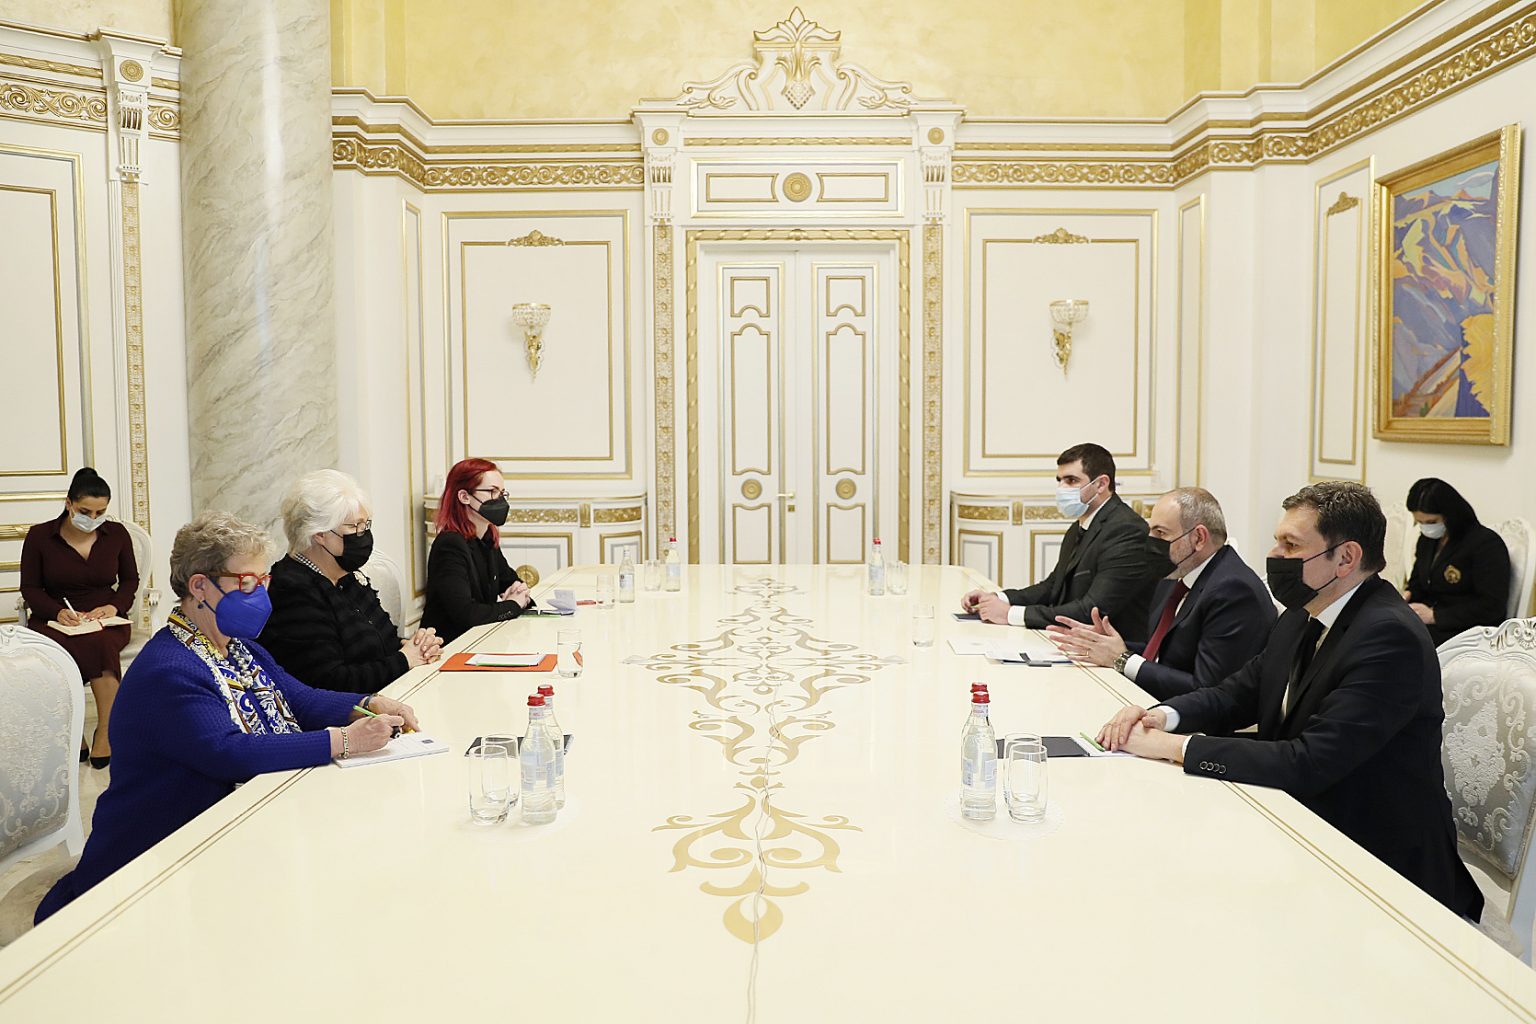 ՀՀ-ԵՄ խորհրդարանական գործընկերության կոմիտեն կարևոր հարթակ է Հայաստանի ժողովրդավարական օրակարգի համար. վարչապետն ընդունել է Մարինա Կալյուրանդին և Մարկետա Գրեգորովային